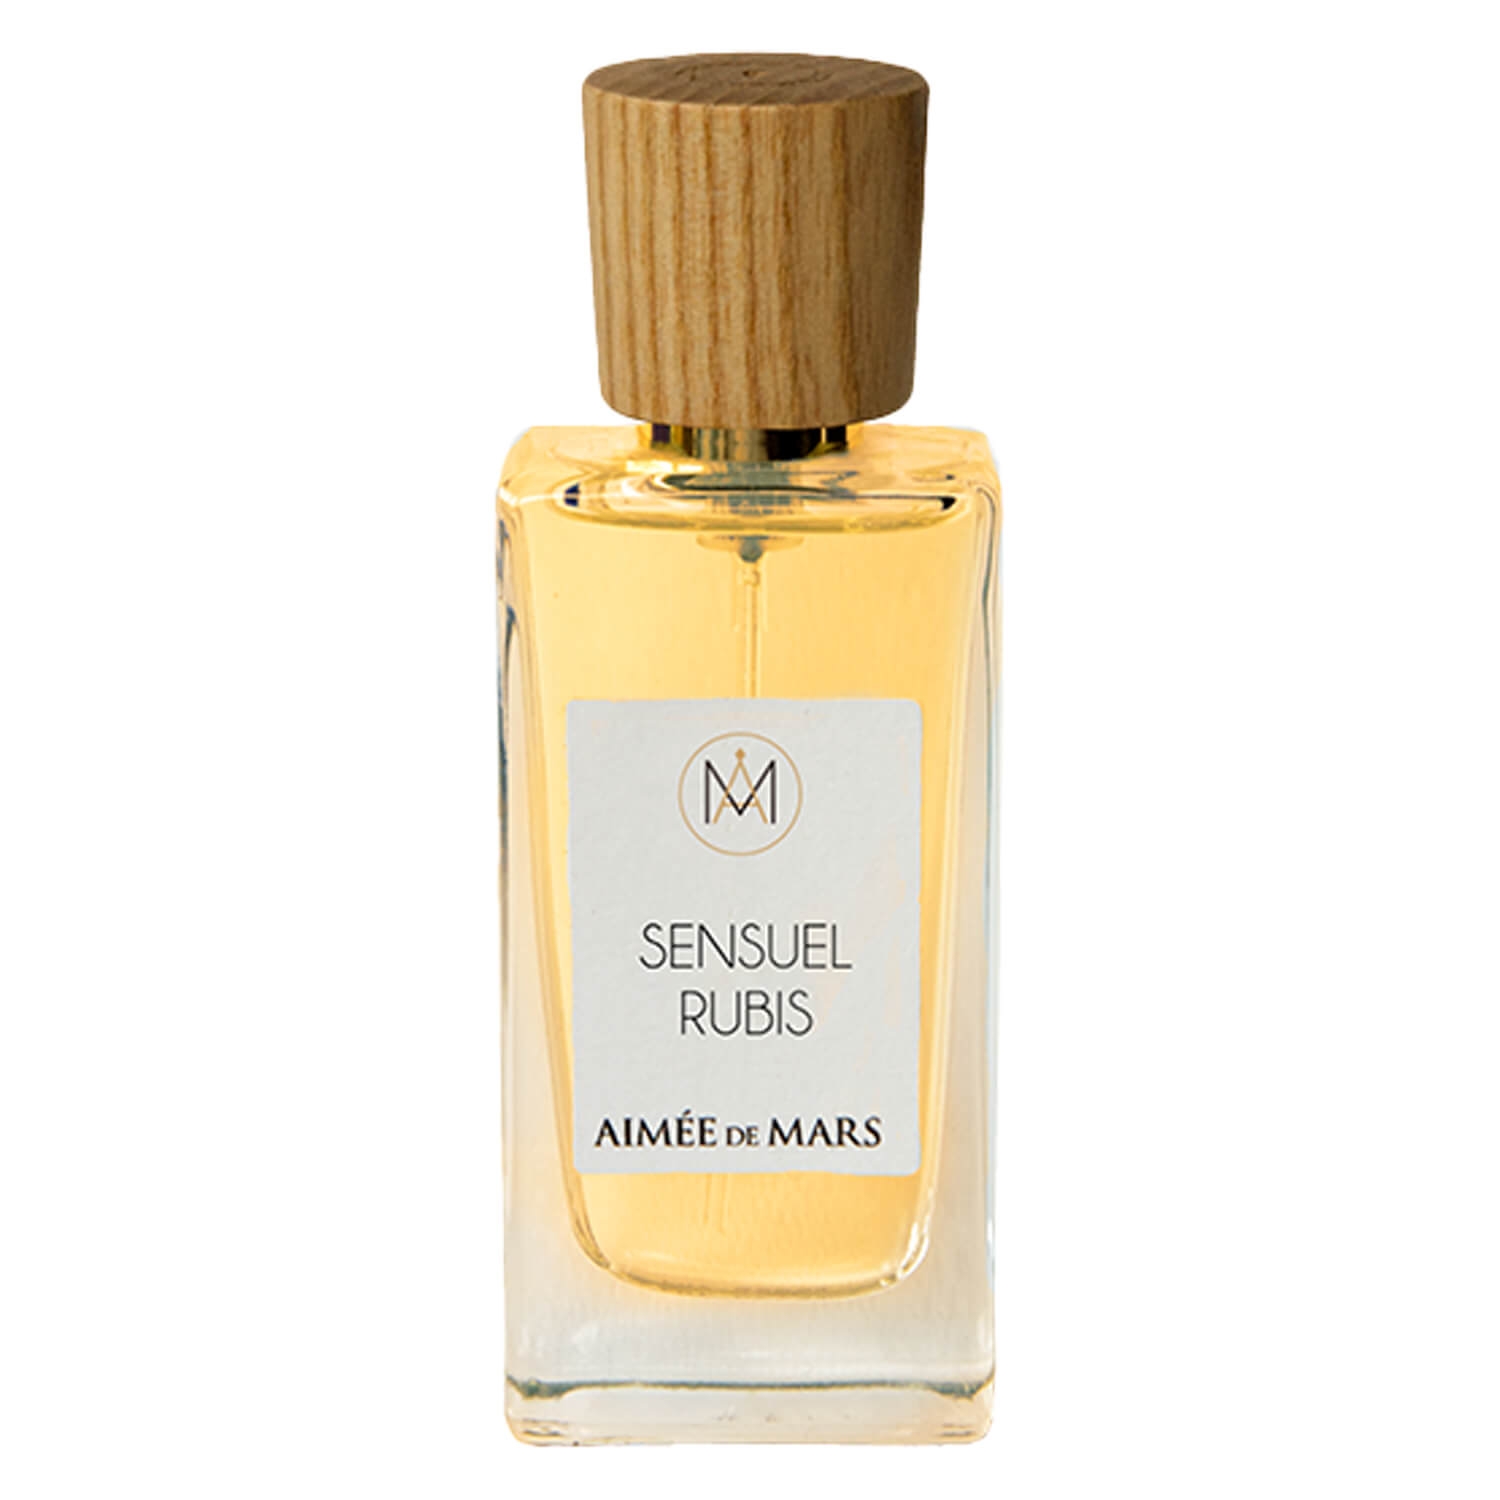 Produktbild von Aimée de Mars - Sensuel Rubis Eau de Parfum